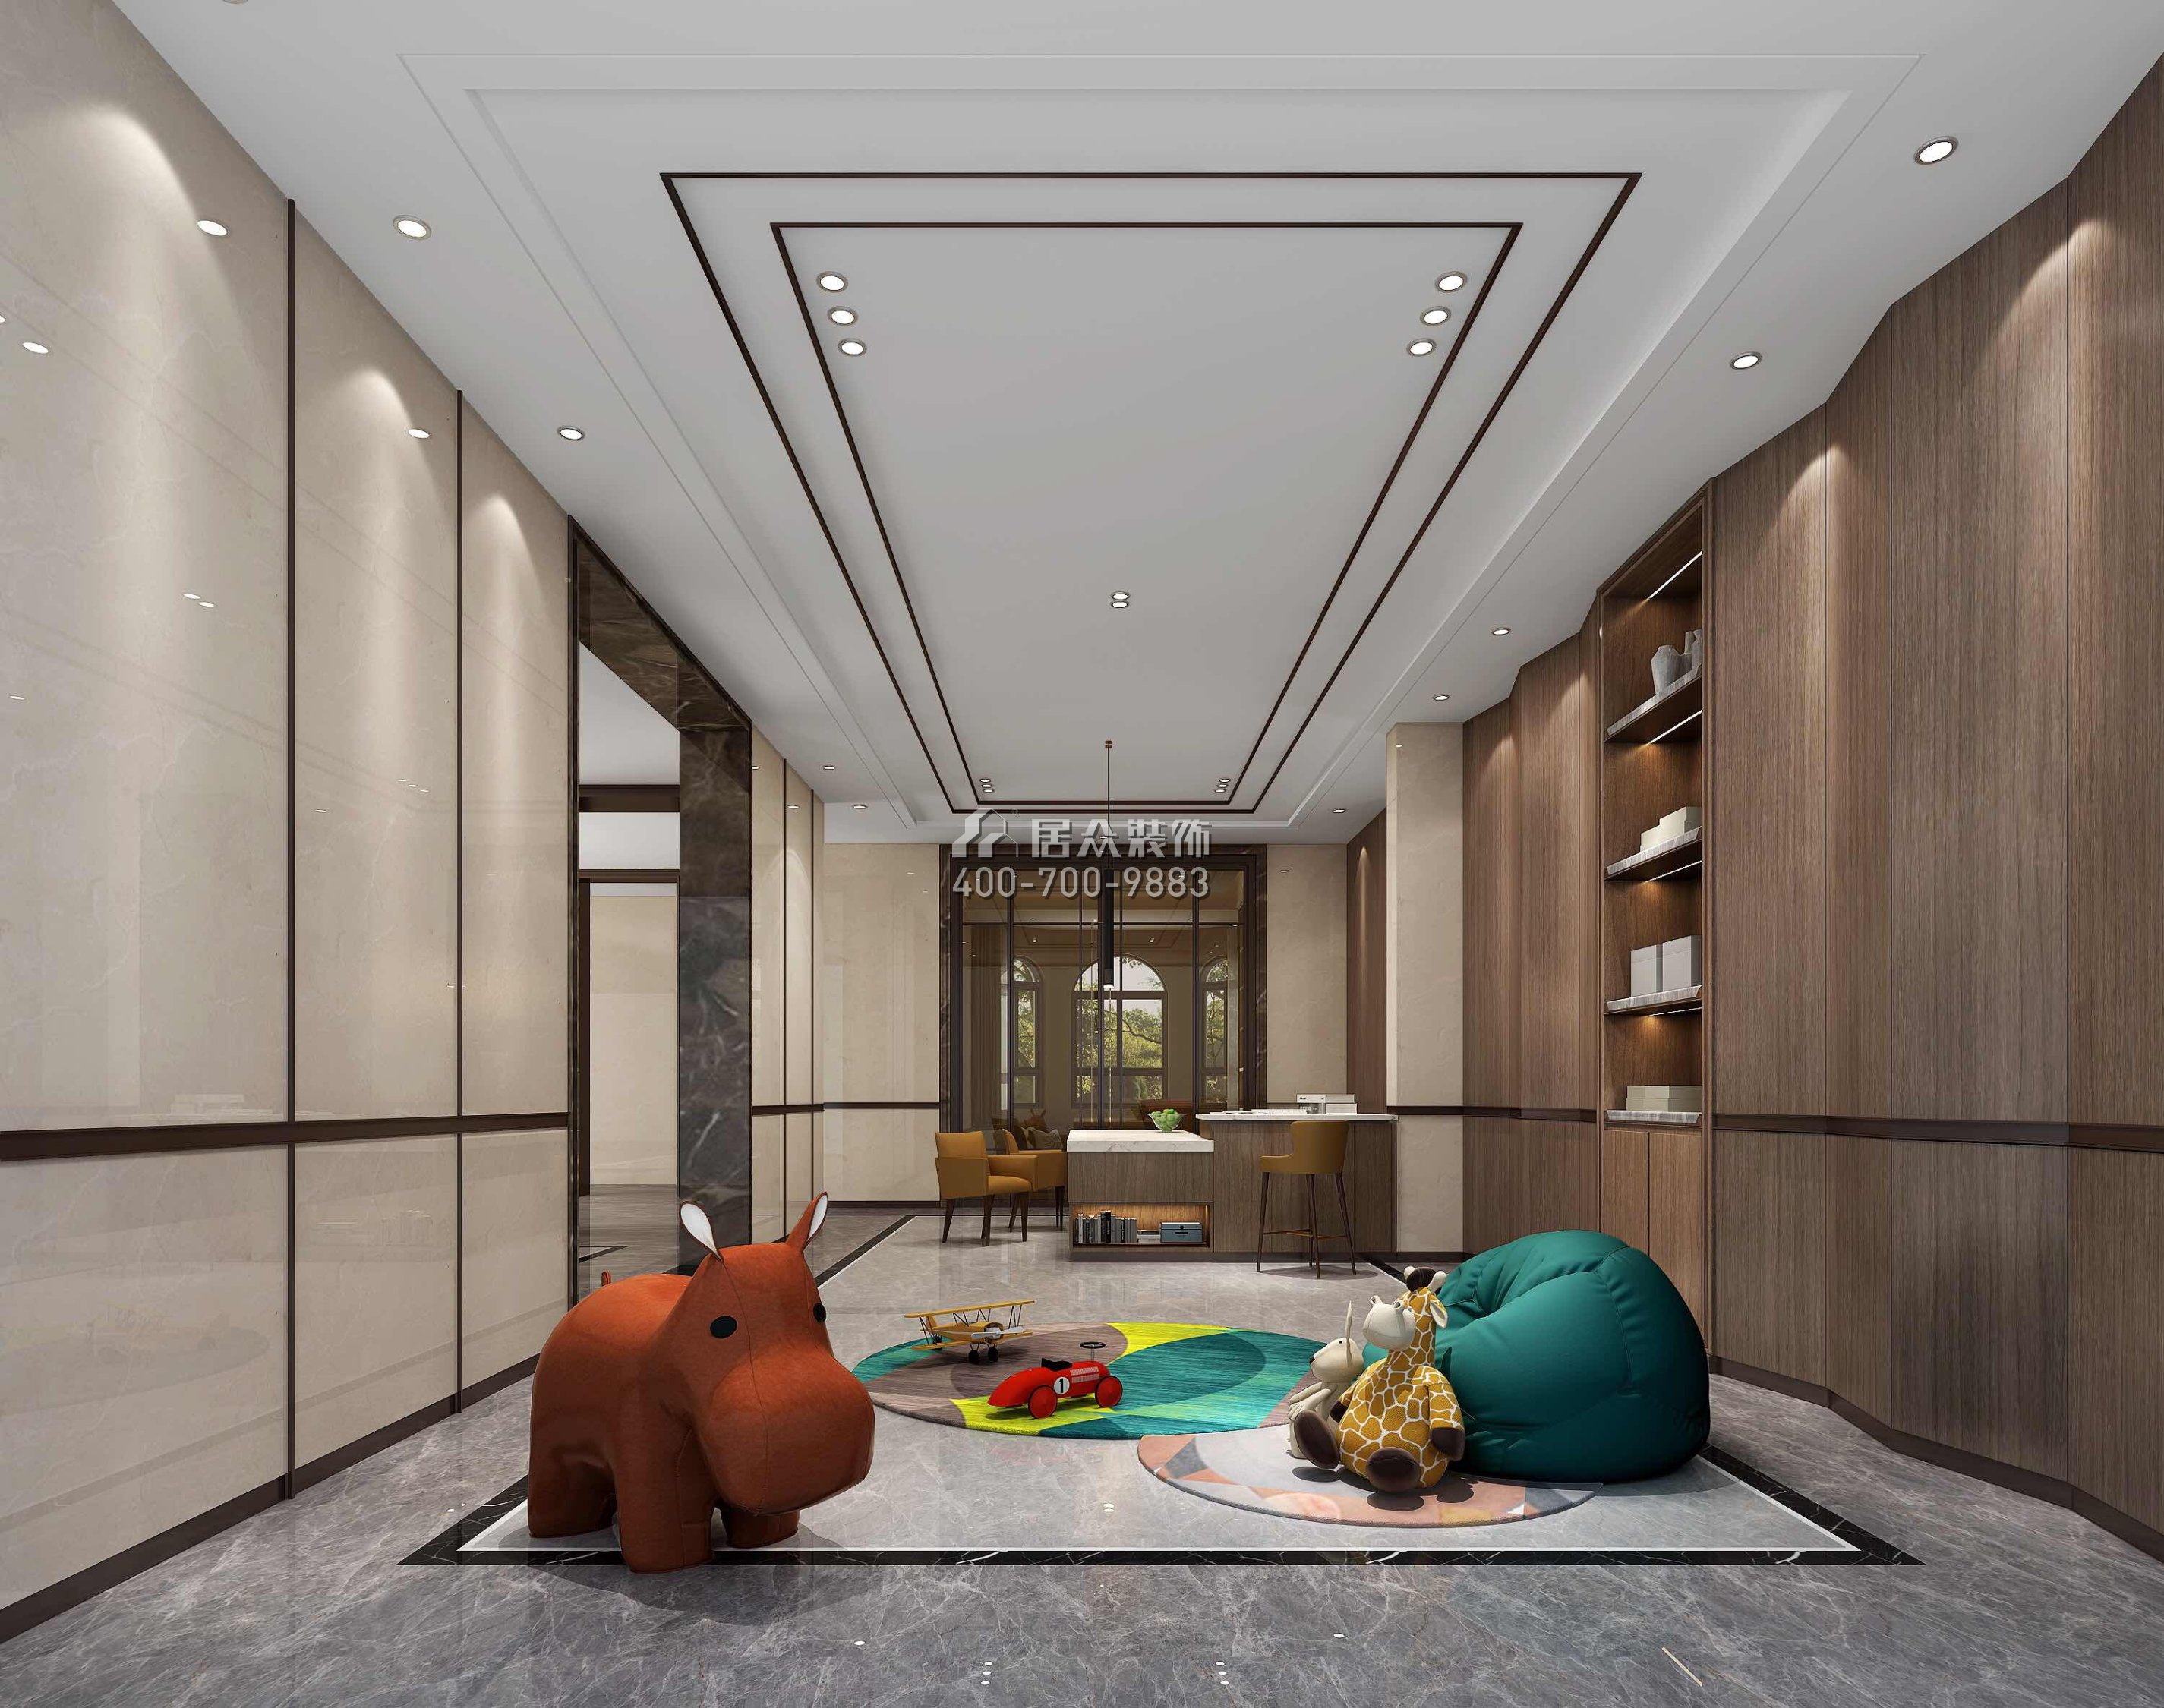 新世紀頤龍灣1000平方米中式風格別墅戶型兒童房裝修效果圖